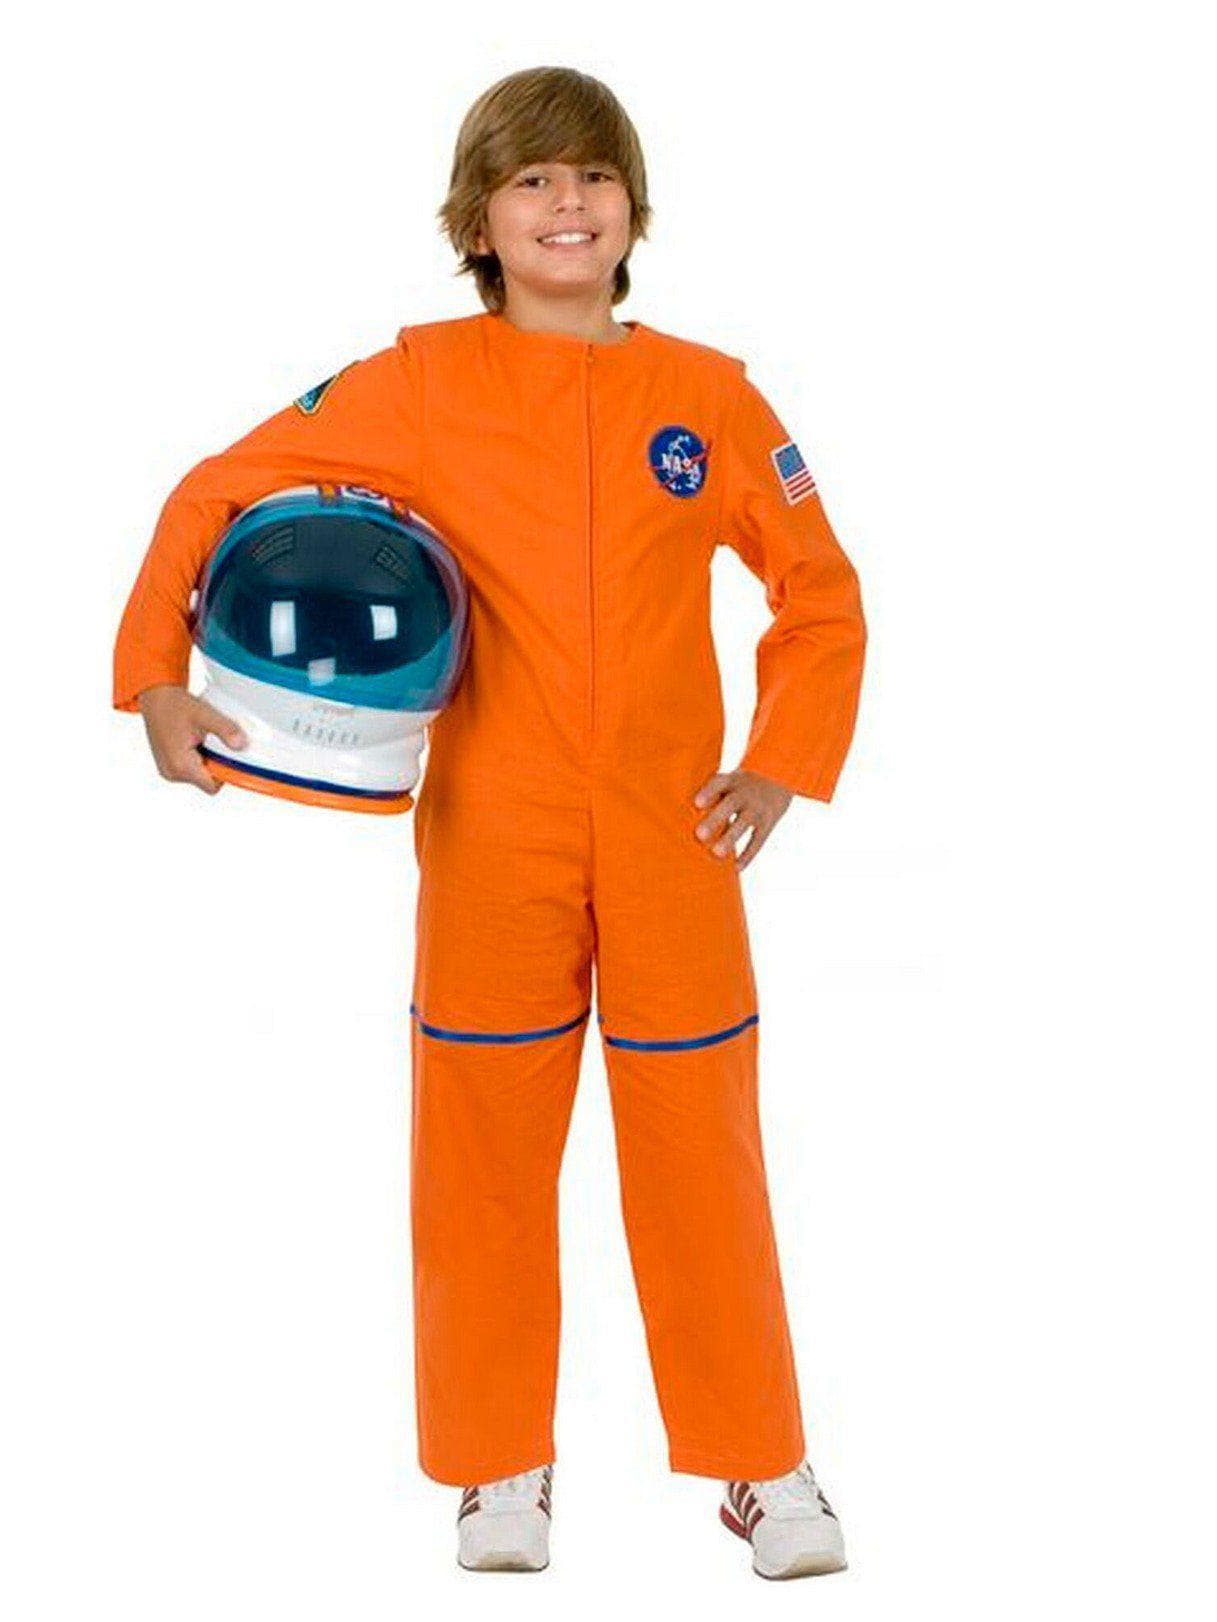 Kid's Astronaut Suit Orange Costume - costumes.com